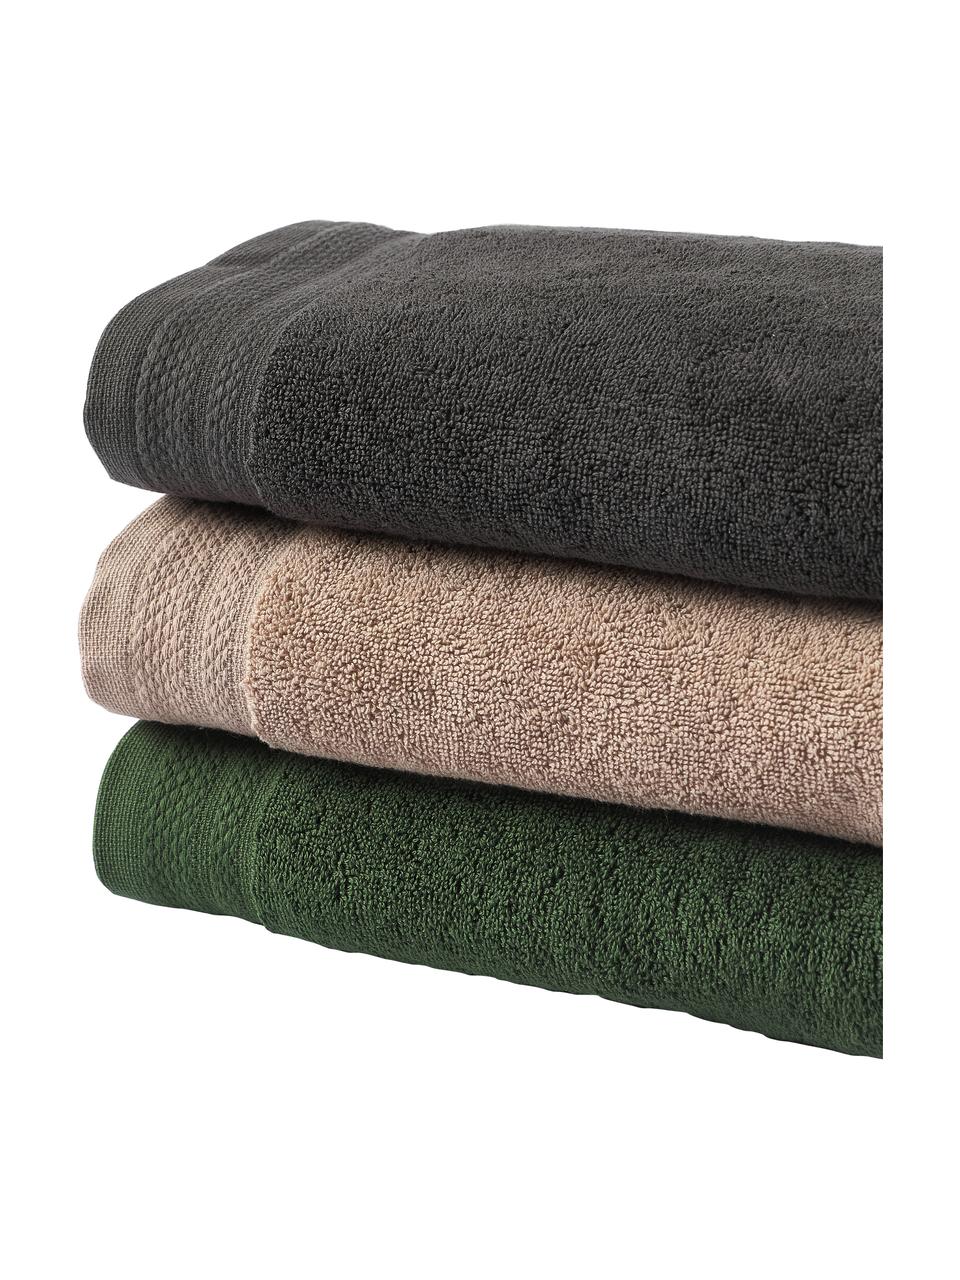 Asciugamano in varie misure Premium, 100% cotone organico certificato GOTS (da GCL International, GCL-300517).
Qualità pesante, 600 g/m², Verde scuro, Asciugamano, Larg. 50 x Lung. 100 cm